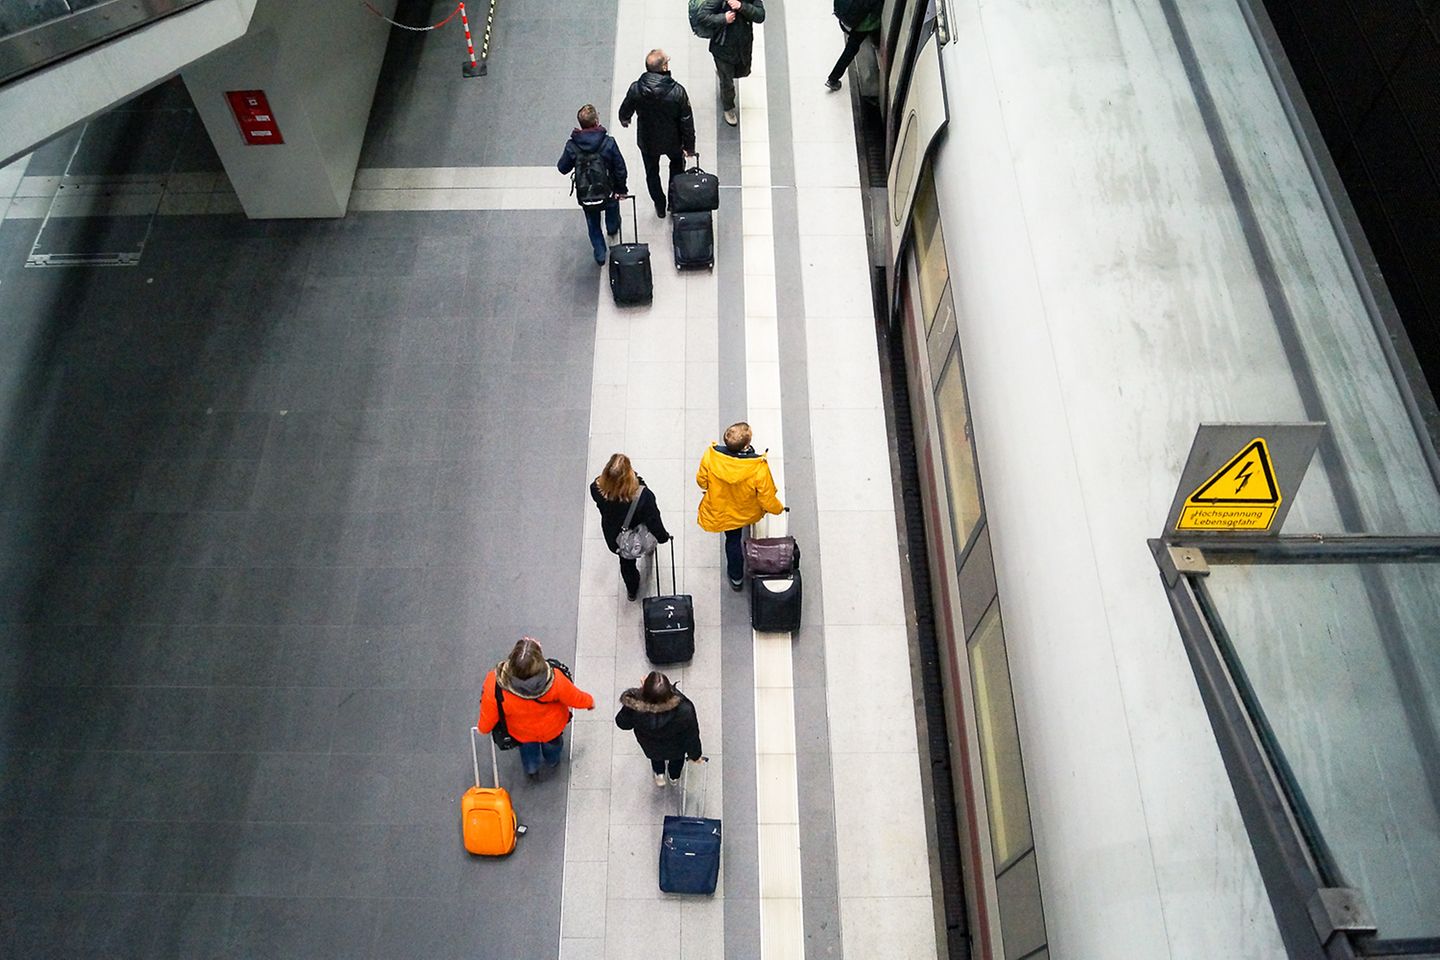 Vogelperspektive eines Bahnsteigs. Reisende ziehen ihre Koffer entlang eines haltenden Zuges.